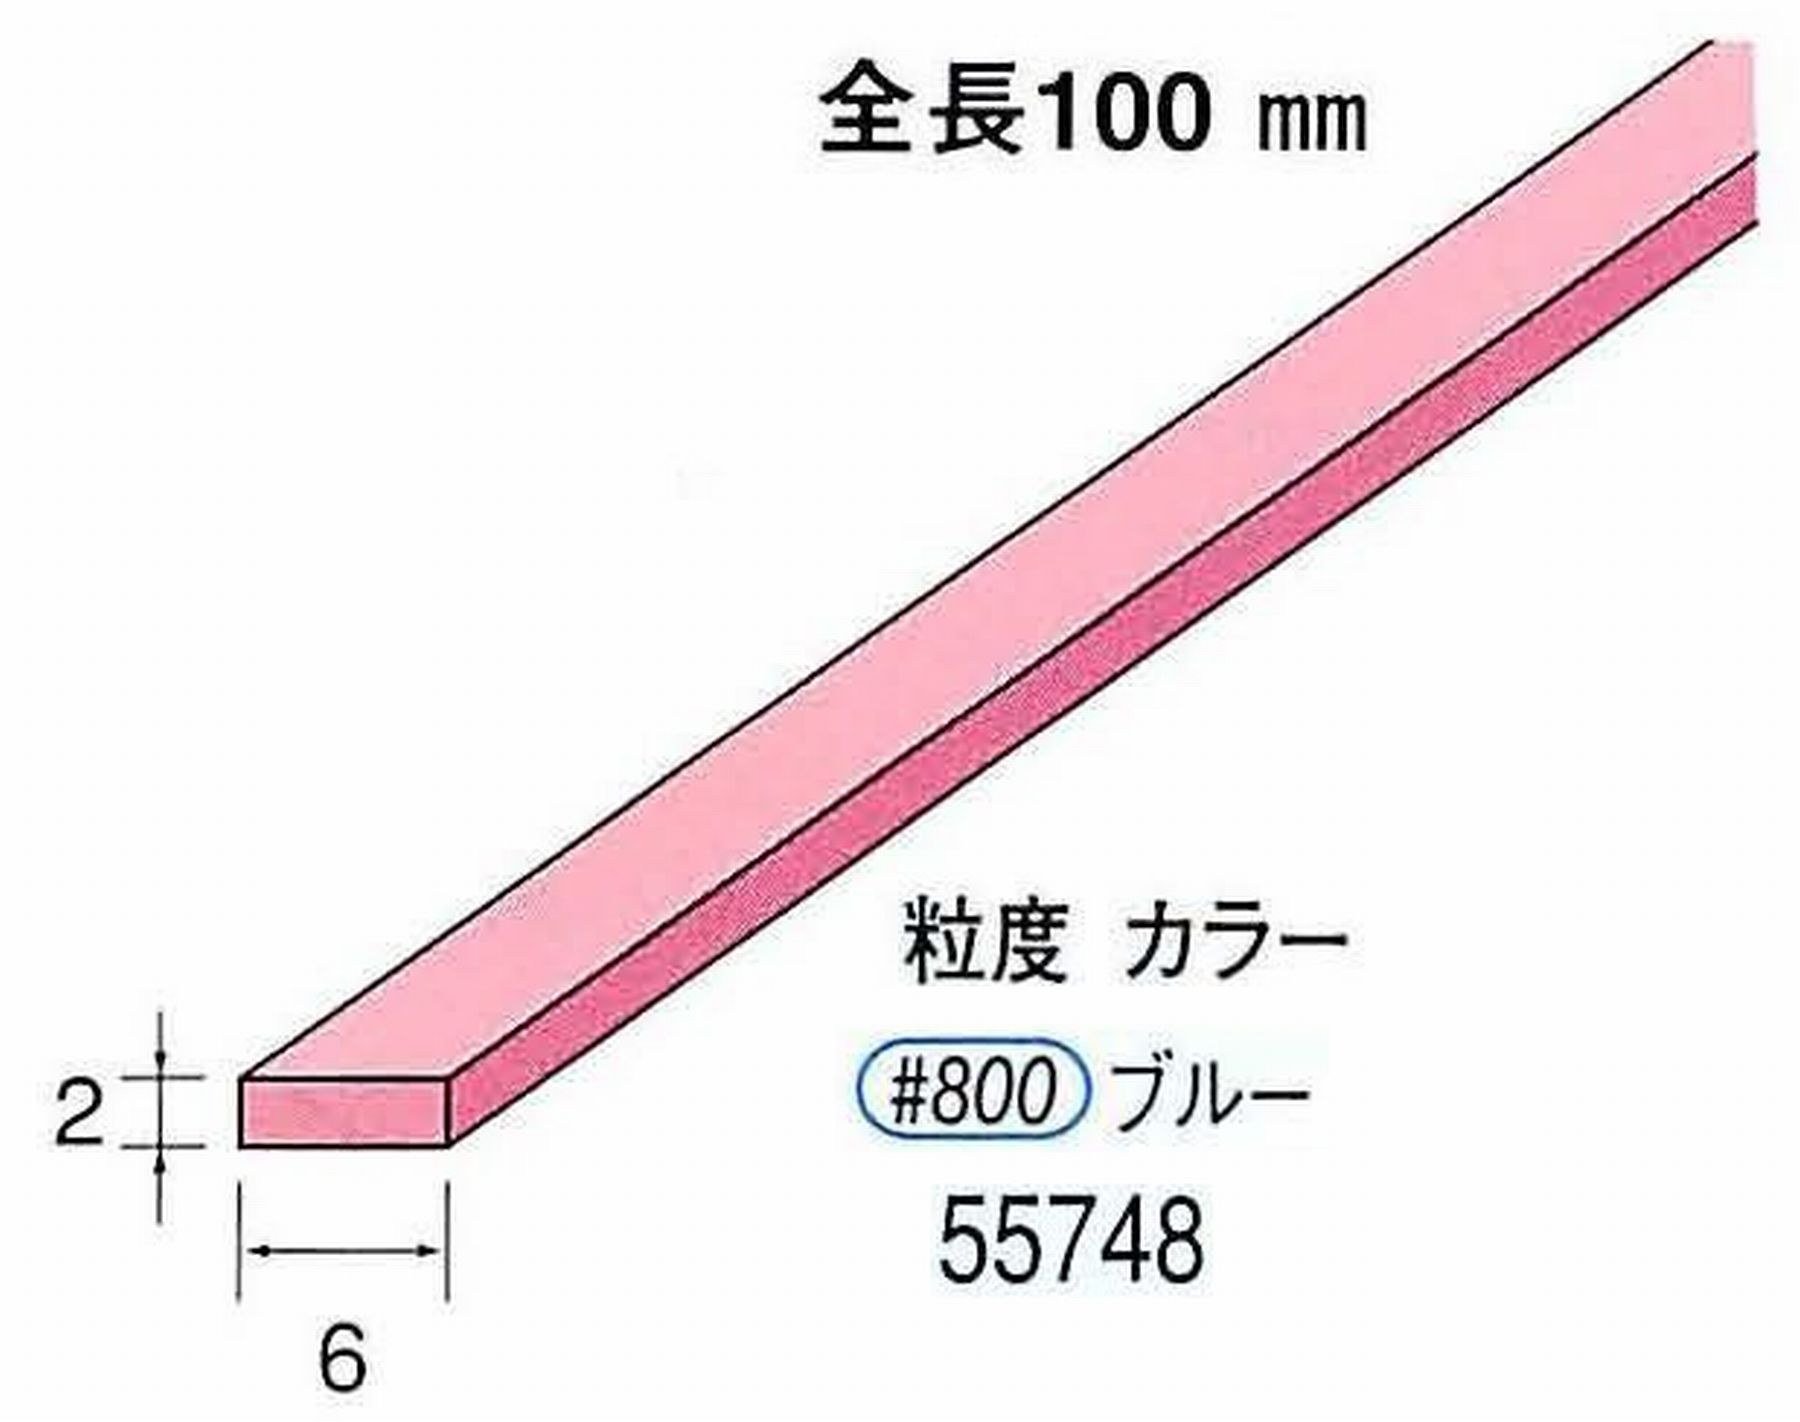 ナカニシ/NAKANISHI セラファイバー砥石 全長100mm ブルー 55748